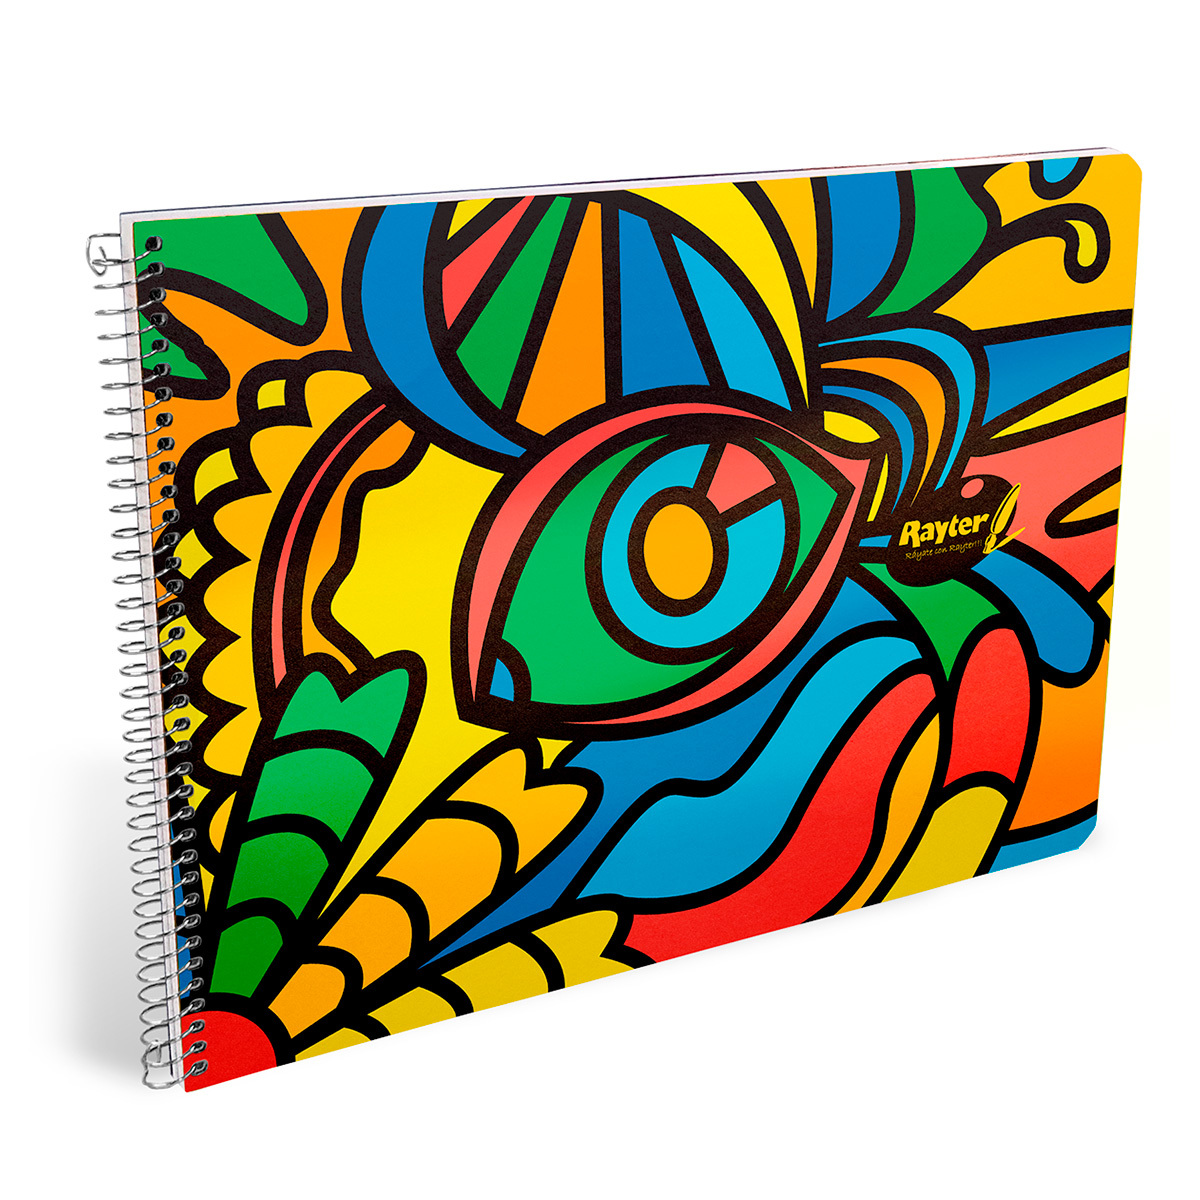 Calendario Sofisticado Centrar Cuaderno de Dibujo Rayter Marquilla 50 hojas | Office Depot Mexico